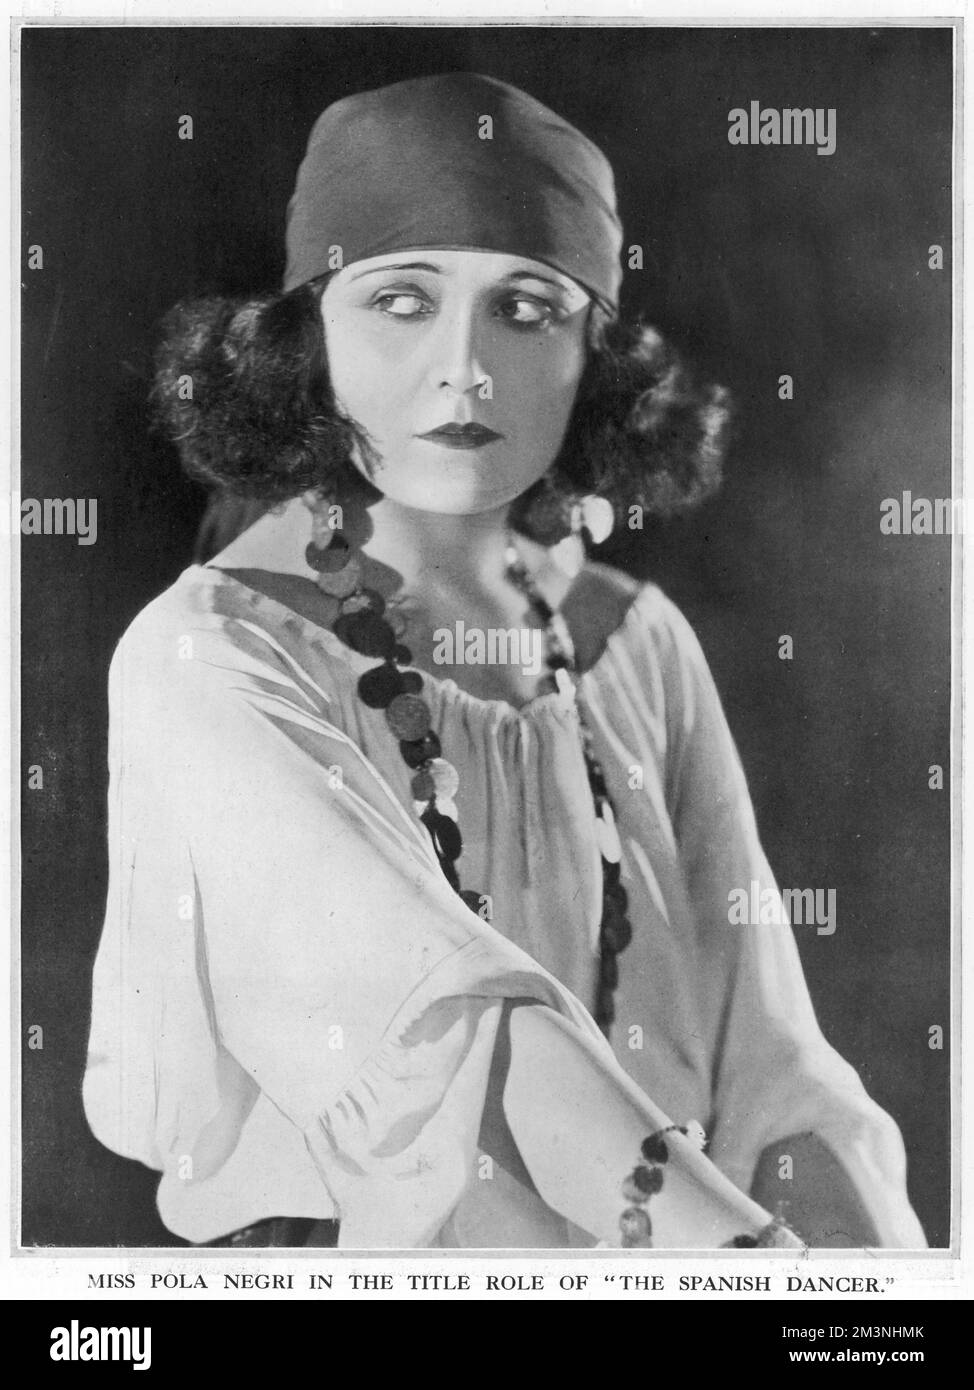 POLA NEGRI (Barbara Apolonia Chalupiec) nel 1924, attrice cinematografica polacca specializzata in ruoli femminili fatali nei film muti. Visto qui nel ruolo di titolo di 'The Spanish Dancer', una ragazza danzante e zingara cassiere di fortuna che ha affascinato un re. 1897 - 1987 Foto Stock